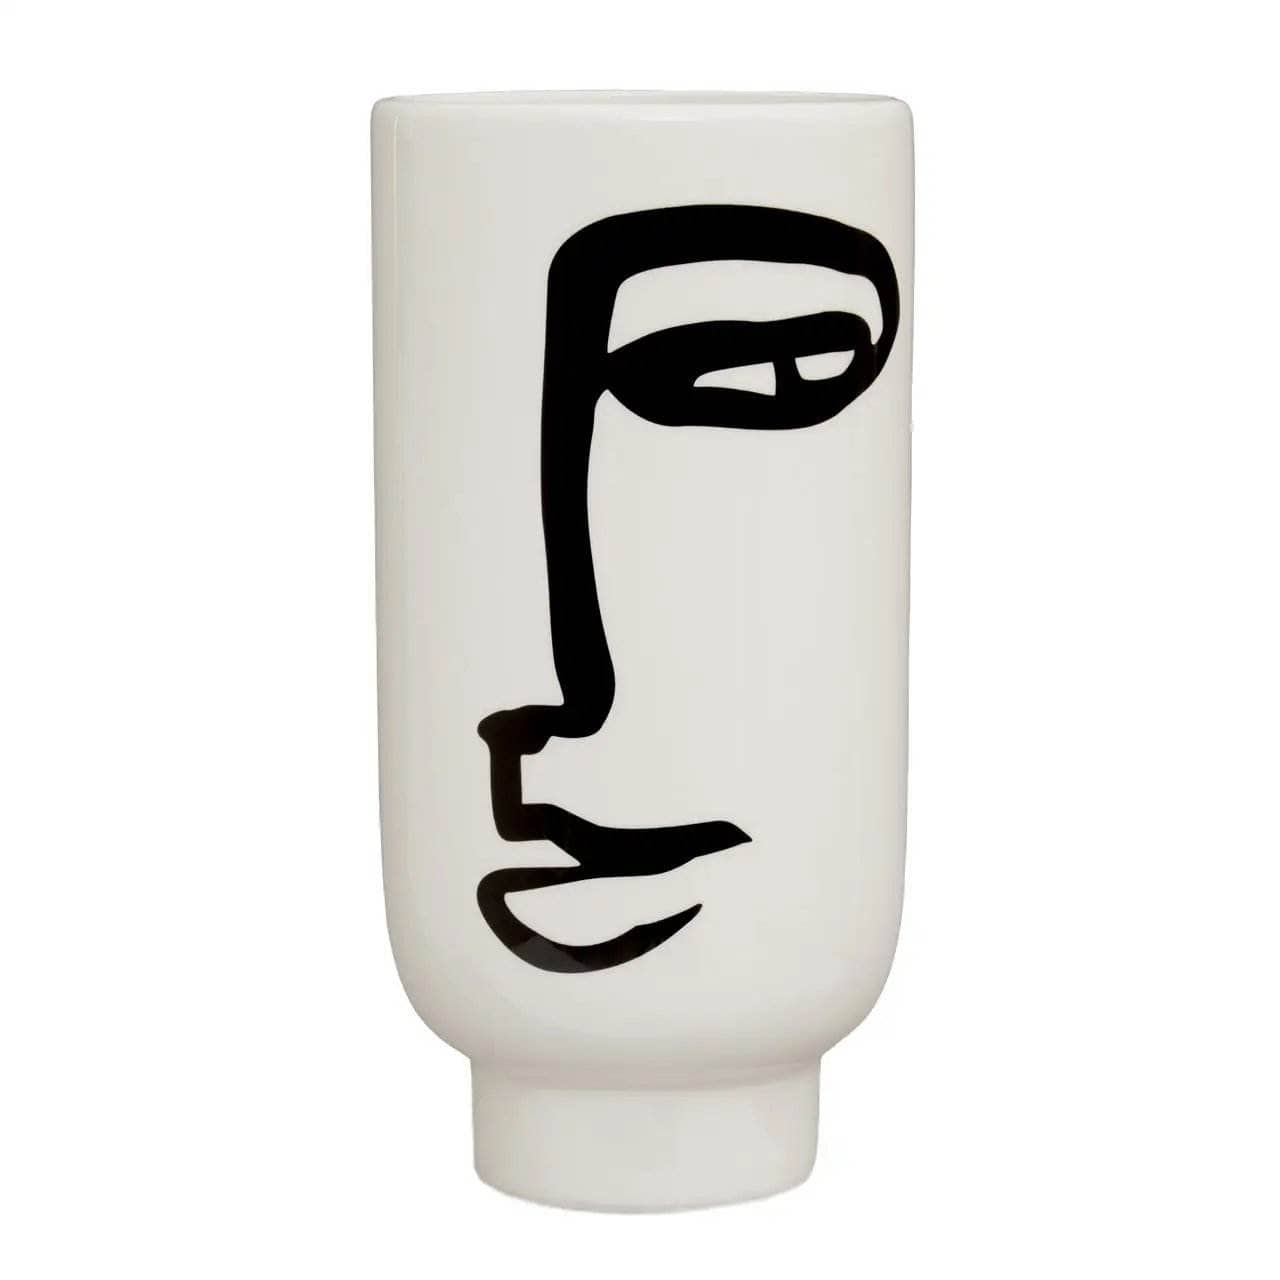 Homeware  -  Viso Large Face Vase  -  60003175